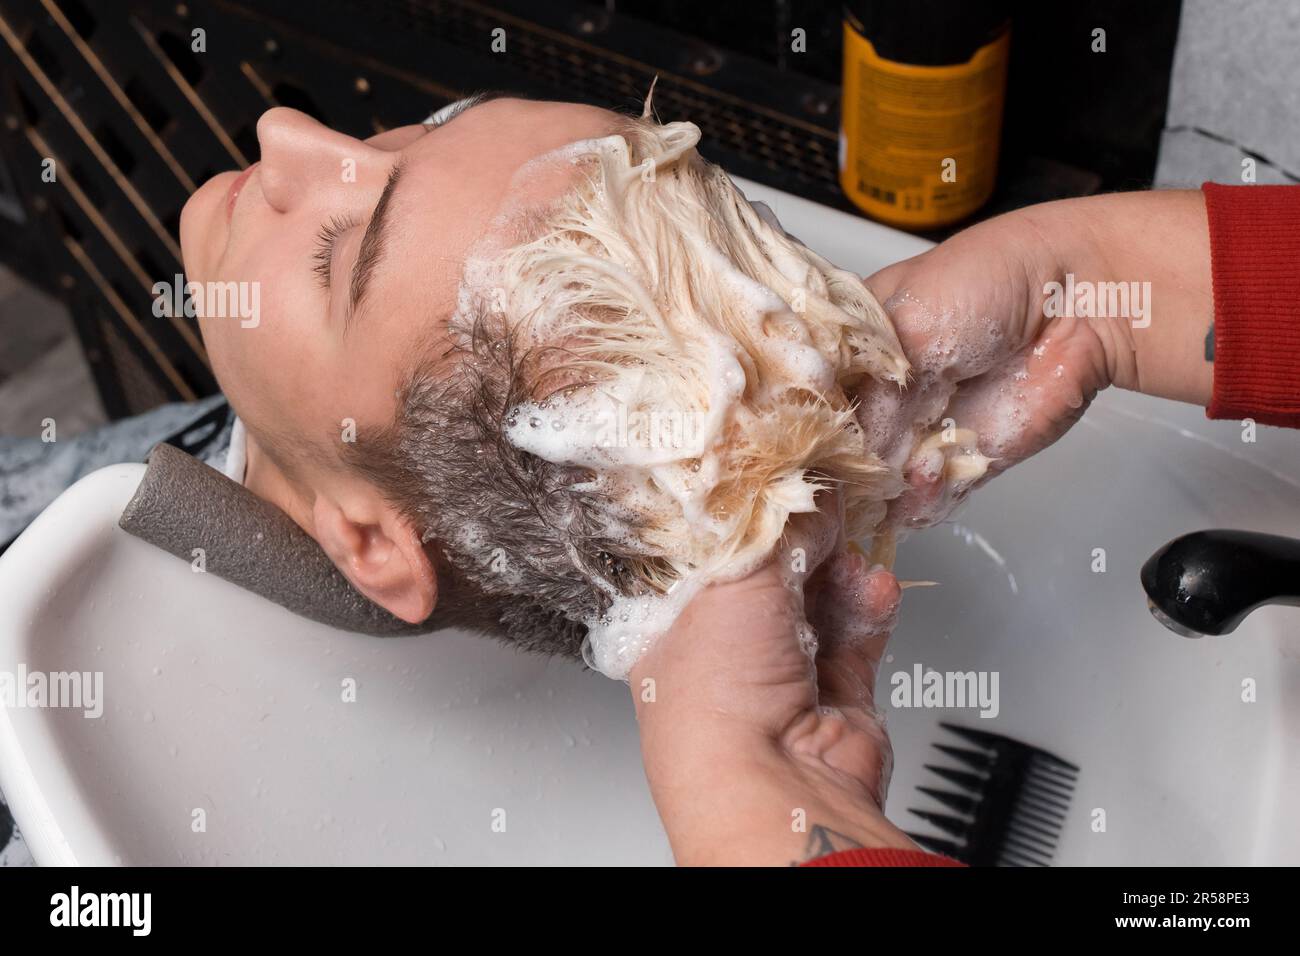 Un coiffeur lave ses cheveux et ses cheveux avec de la mousse dans le lavabo d'un client de coiffeur avant de couper et de teindre ses cheveux. Banque D'Images